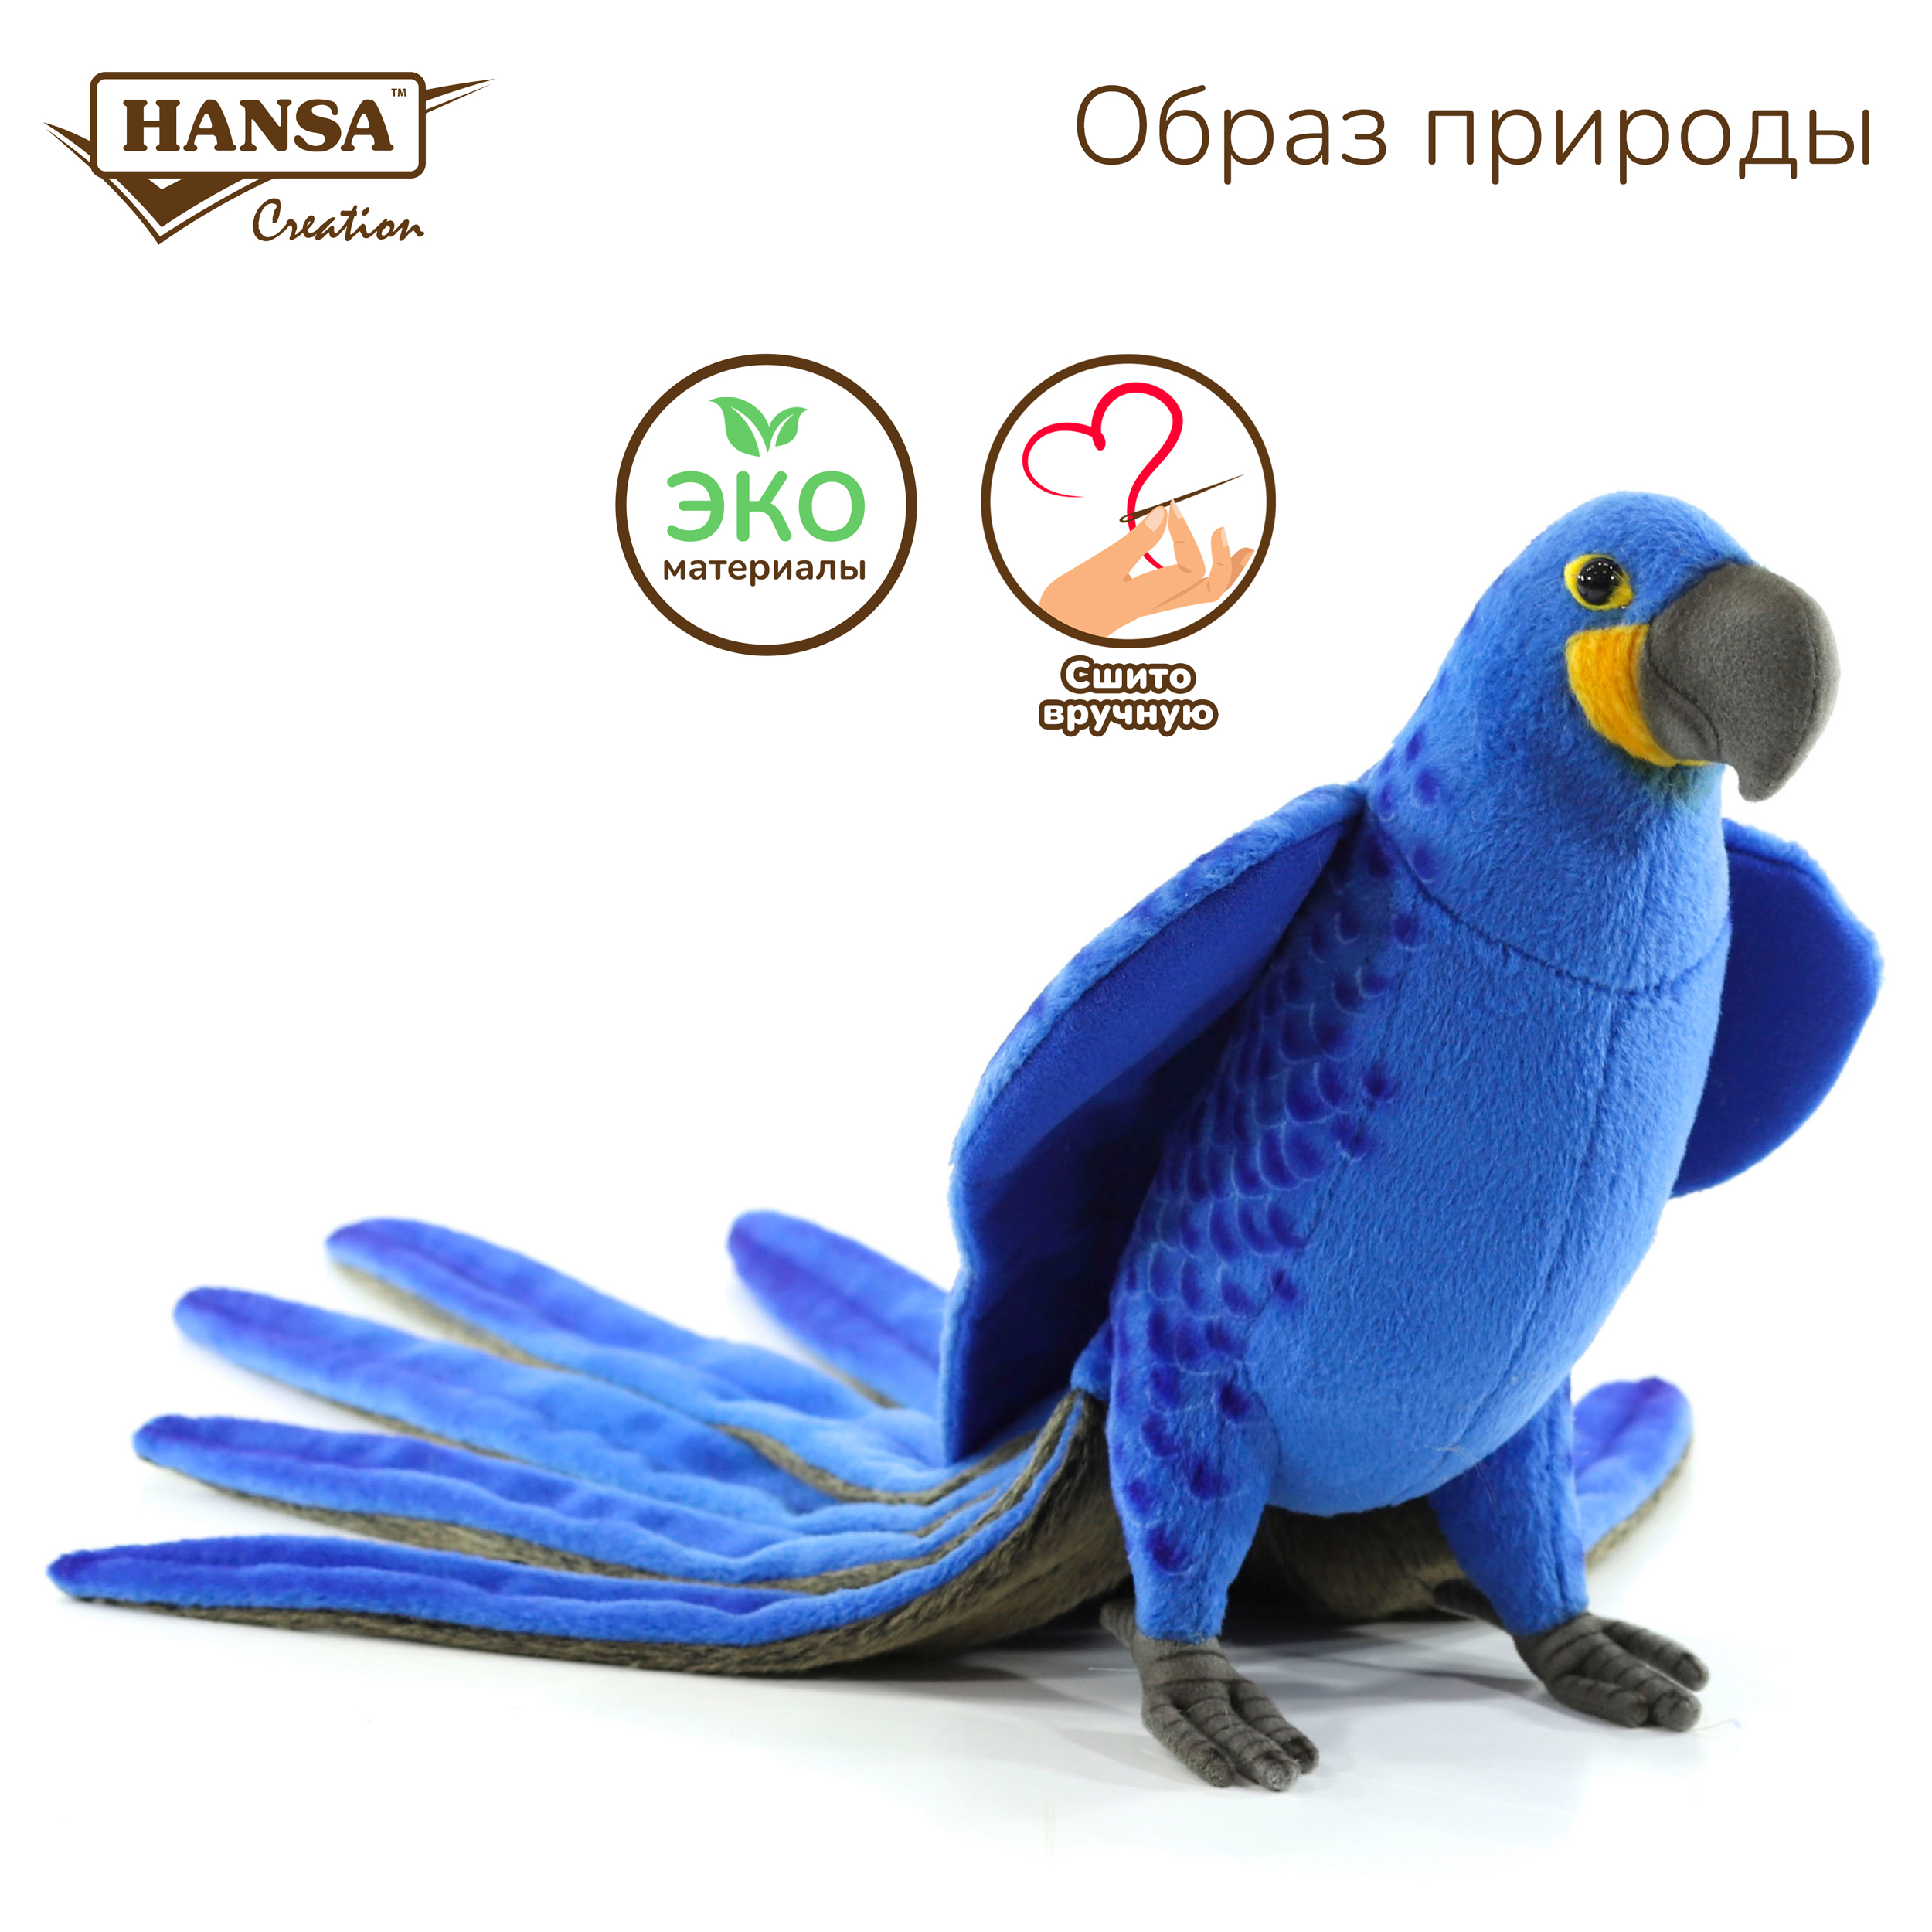 Реалистичная мягкая игрушка Hansa Creation попугай Гиацинтовый ара, 50 см реалистичная мягкая игрушка hansa creation попугай волнистый голубой 15 см